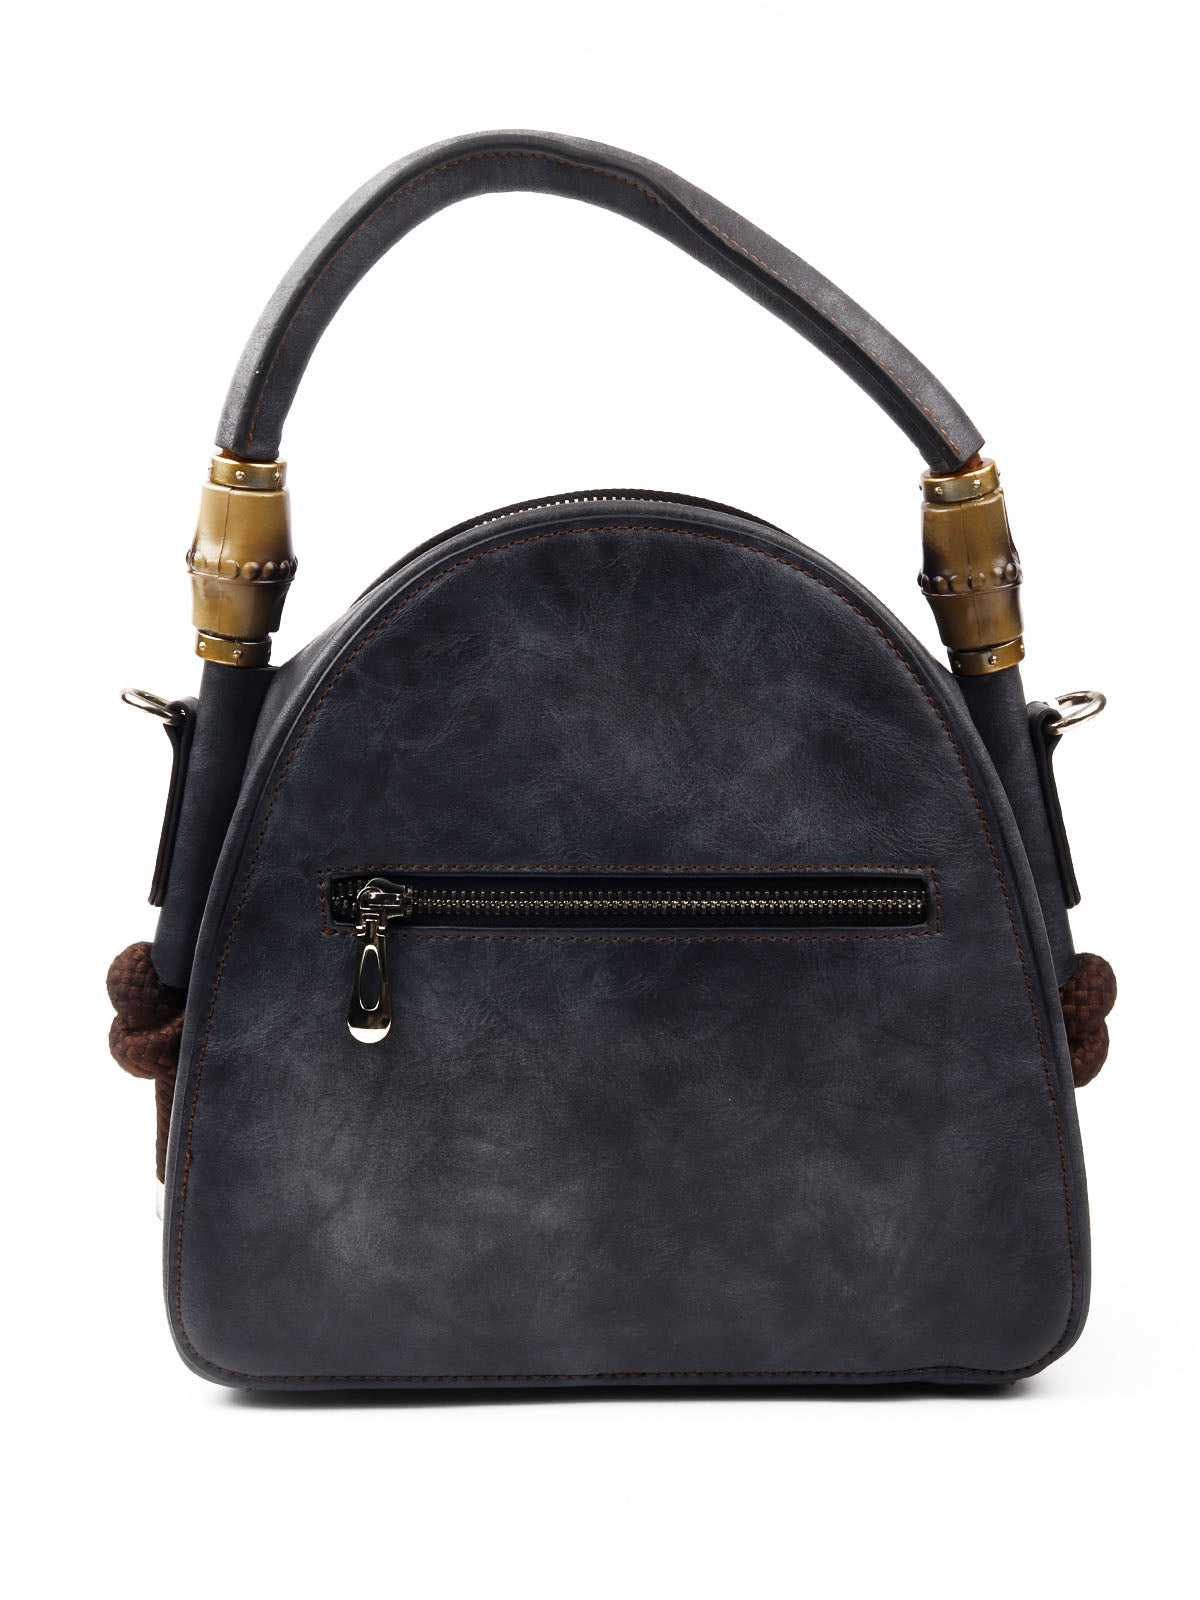 Odette Women Grey Floral Embossed Handbag